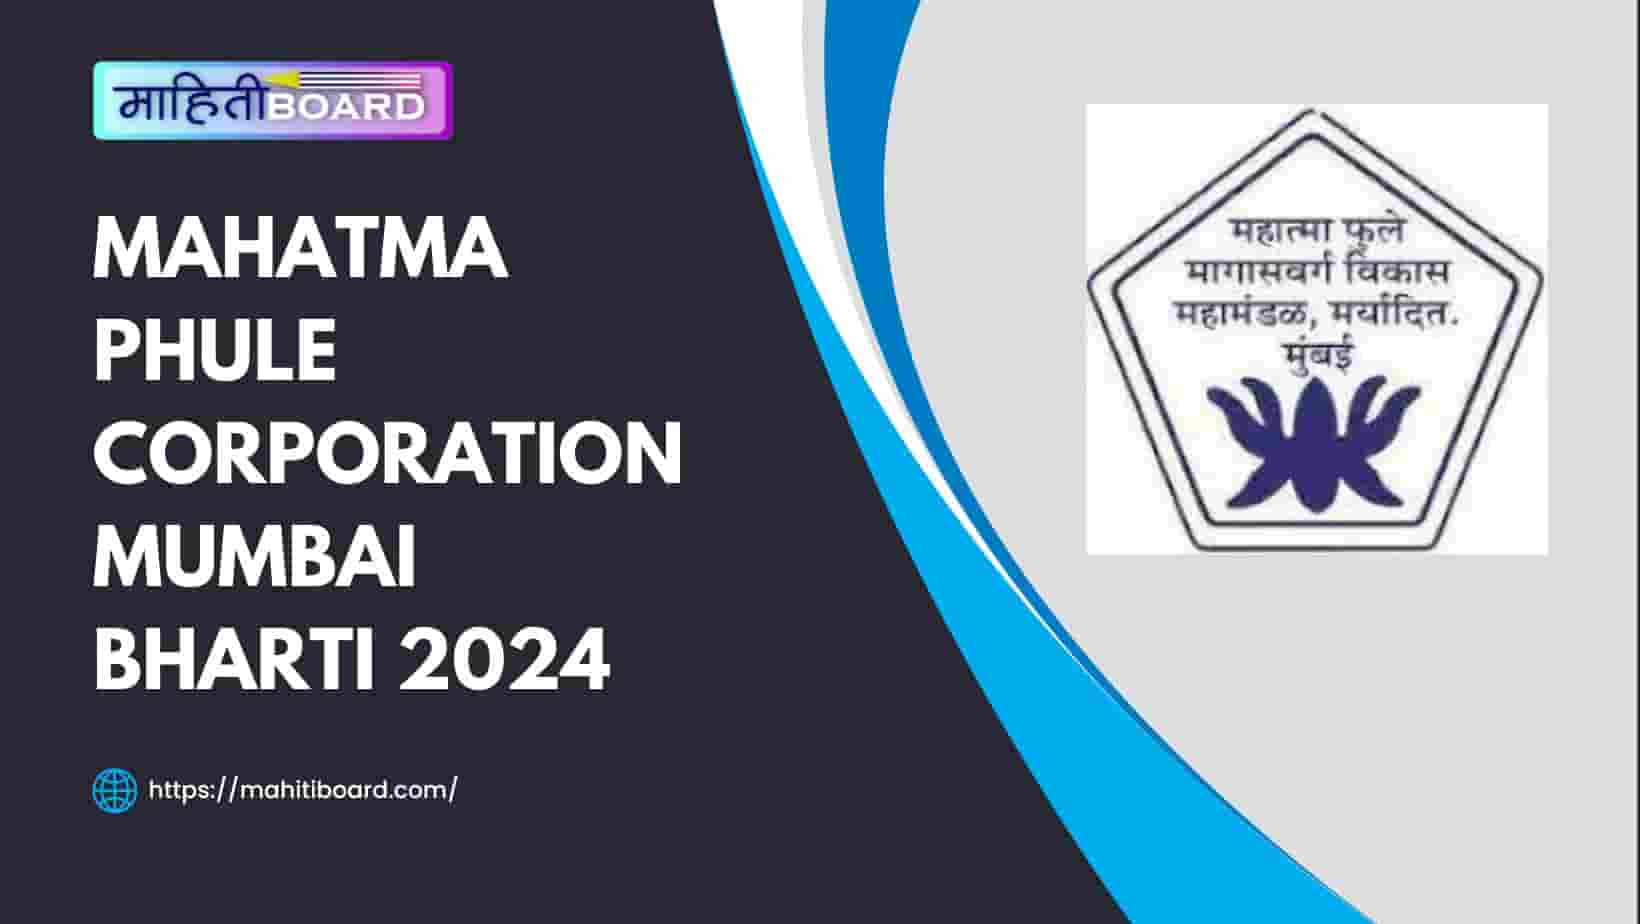 Mahatma Phule Corporation Mumbai Bharti 2024